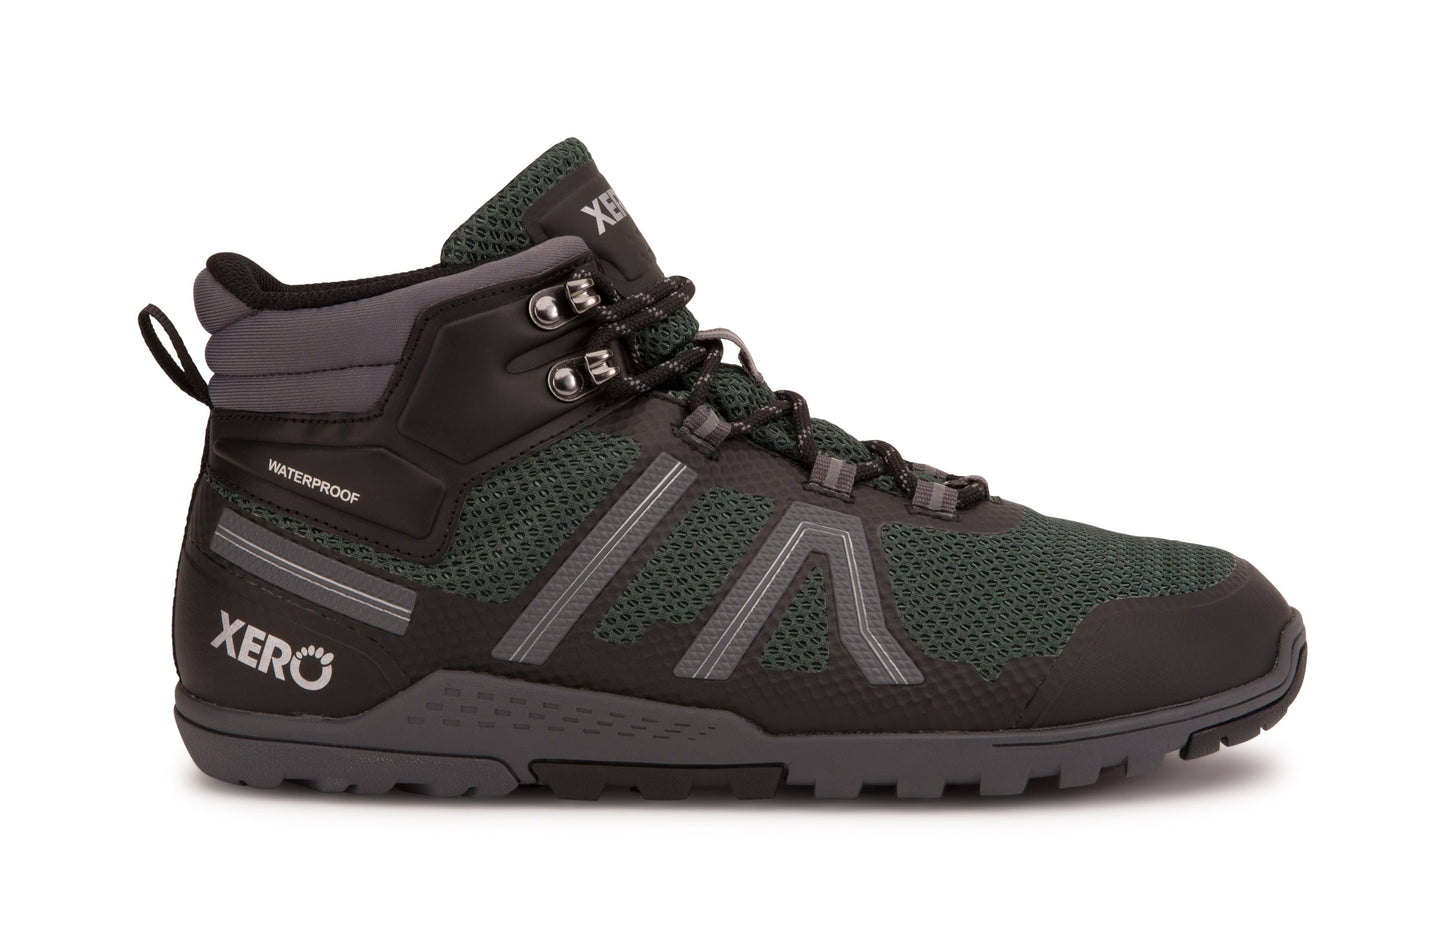 Xero Shoes Xcursion Fusion barfods støvler til mænd i farven spruce, yderside